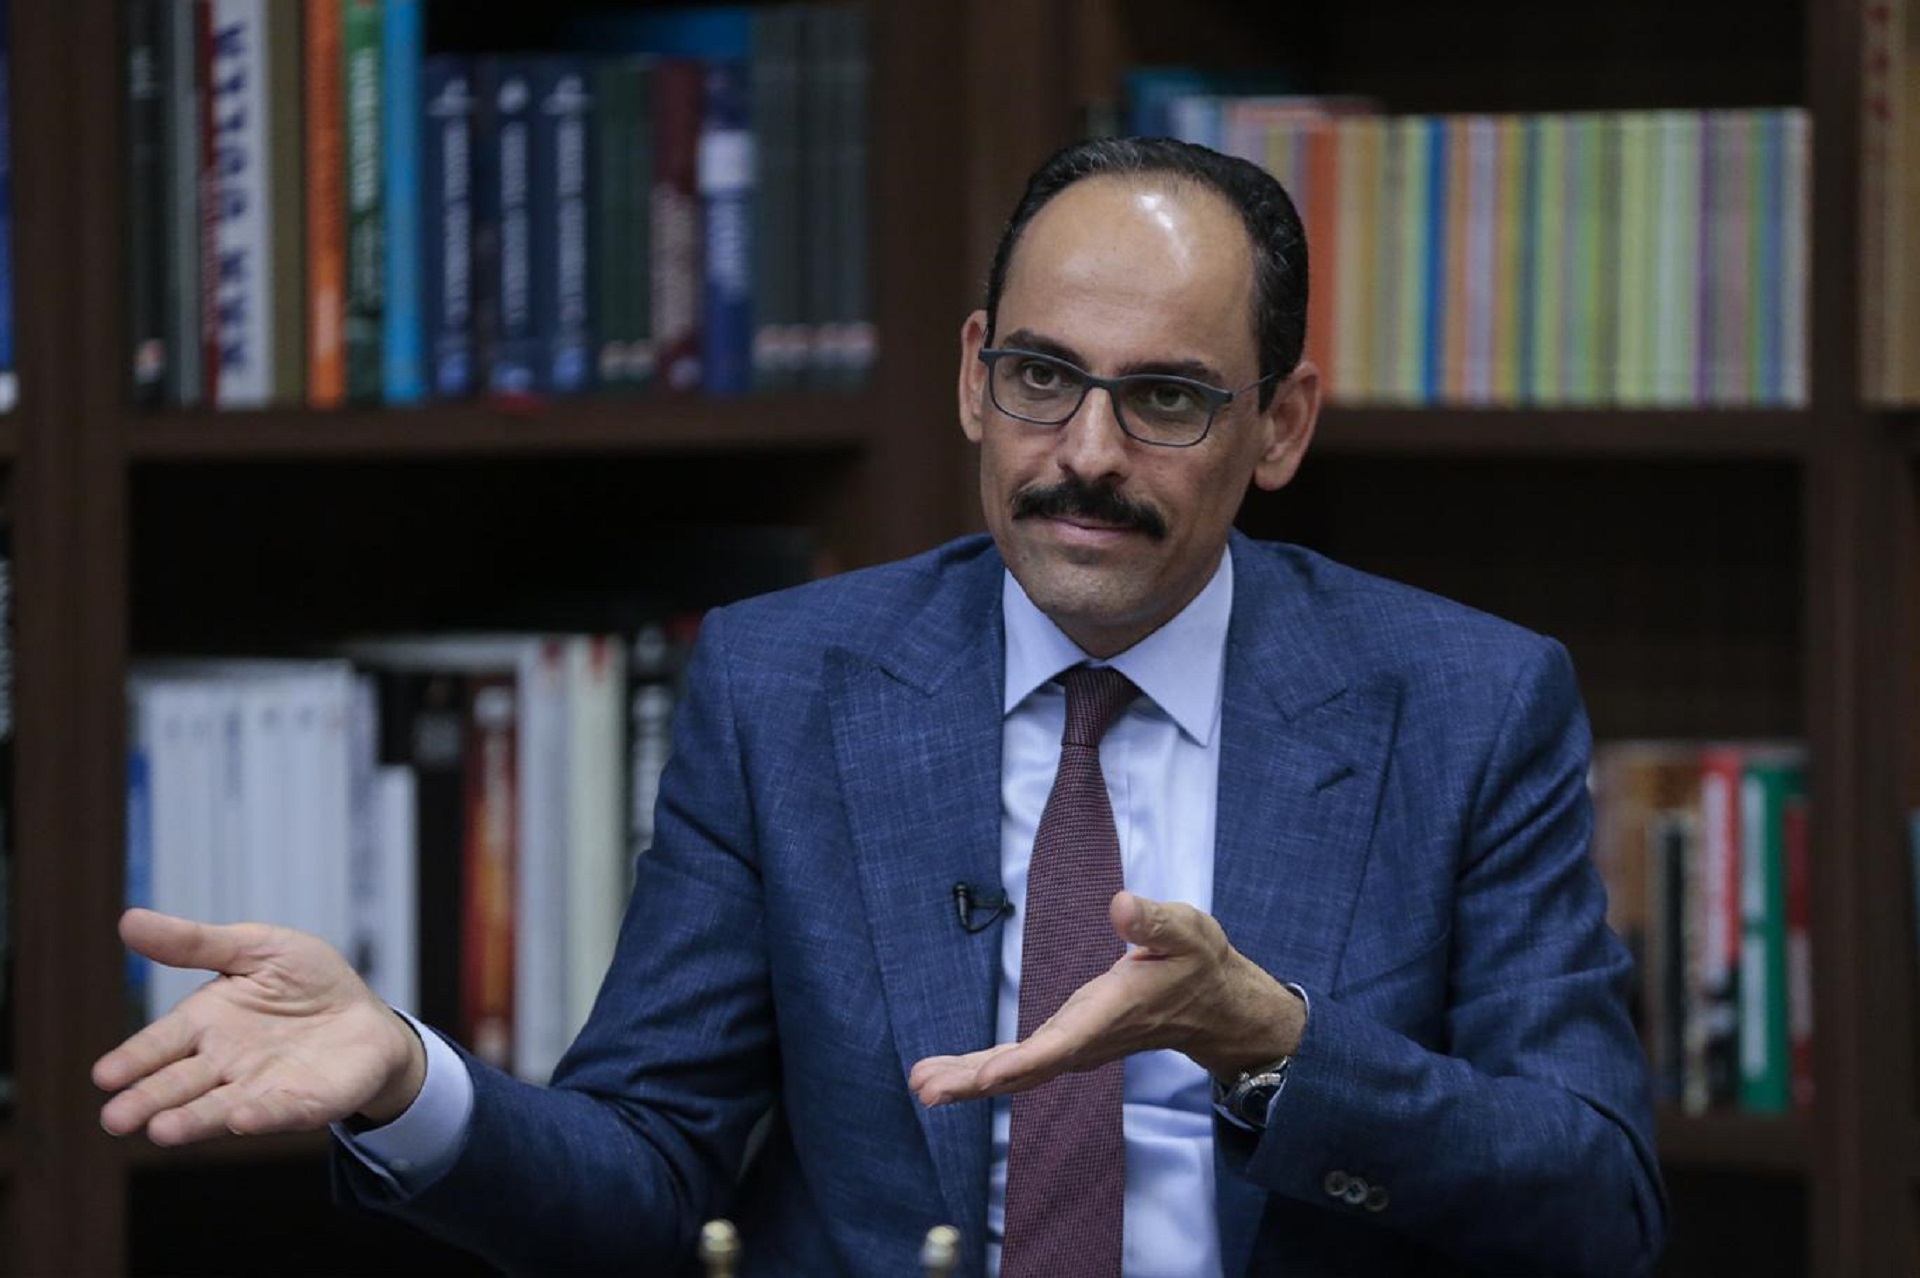 Kalın: "Turquía continuará apoyando a Libia en todas las circunstancias"